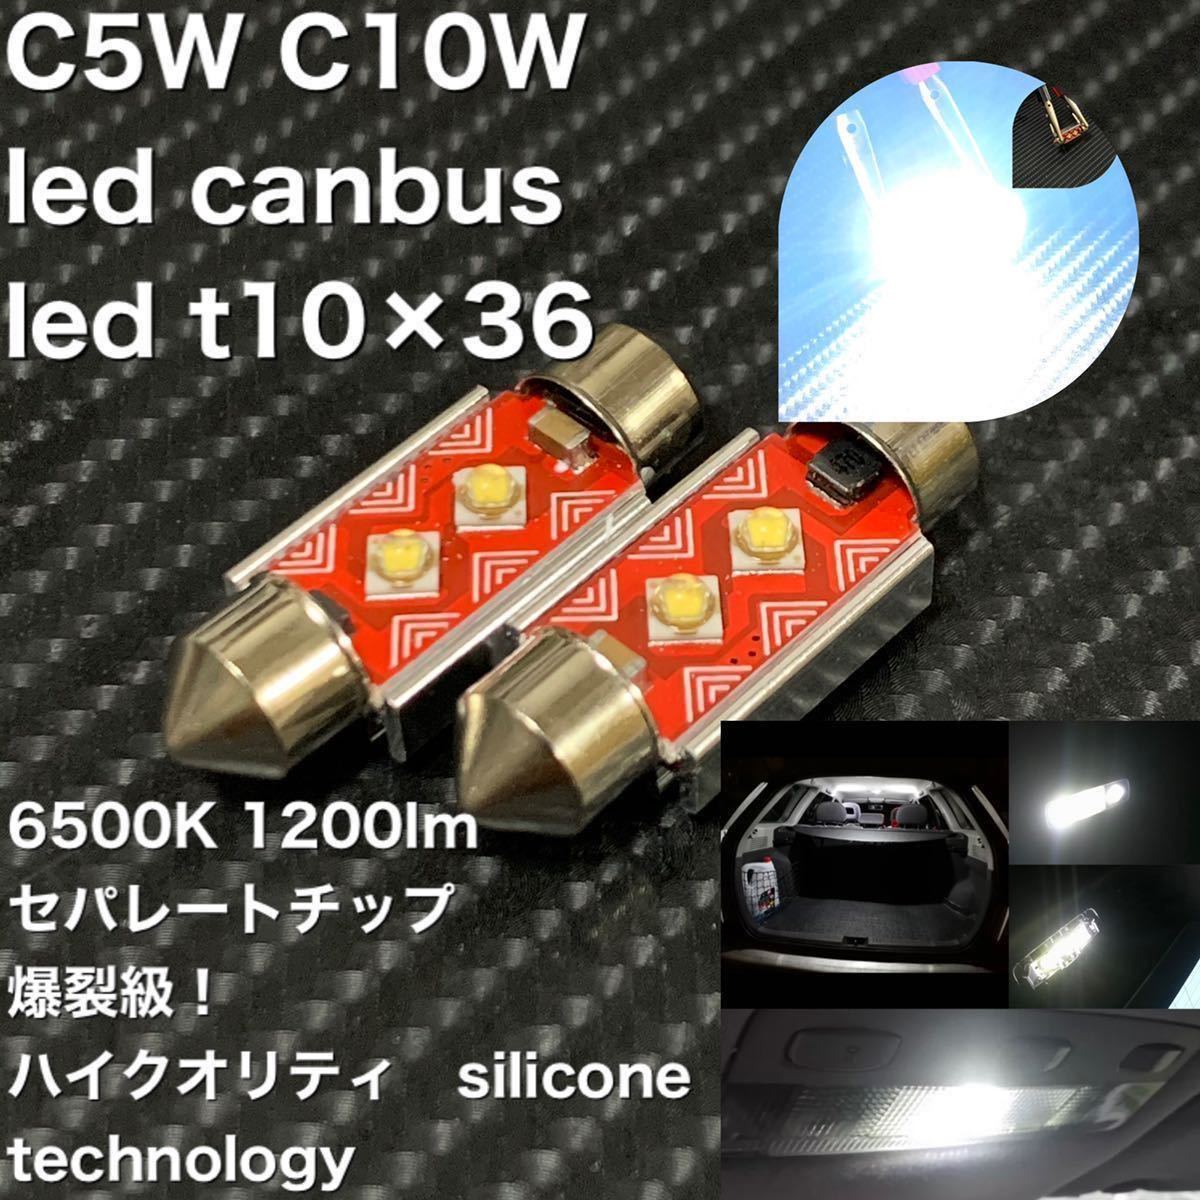 C5W C10W led canbus led t10×36 LEDバルブ LEDルームランプ 39と41も同時購入可能です。ベンツ BMW Audi アウディ フォルクスワーゲン_画像1